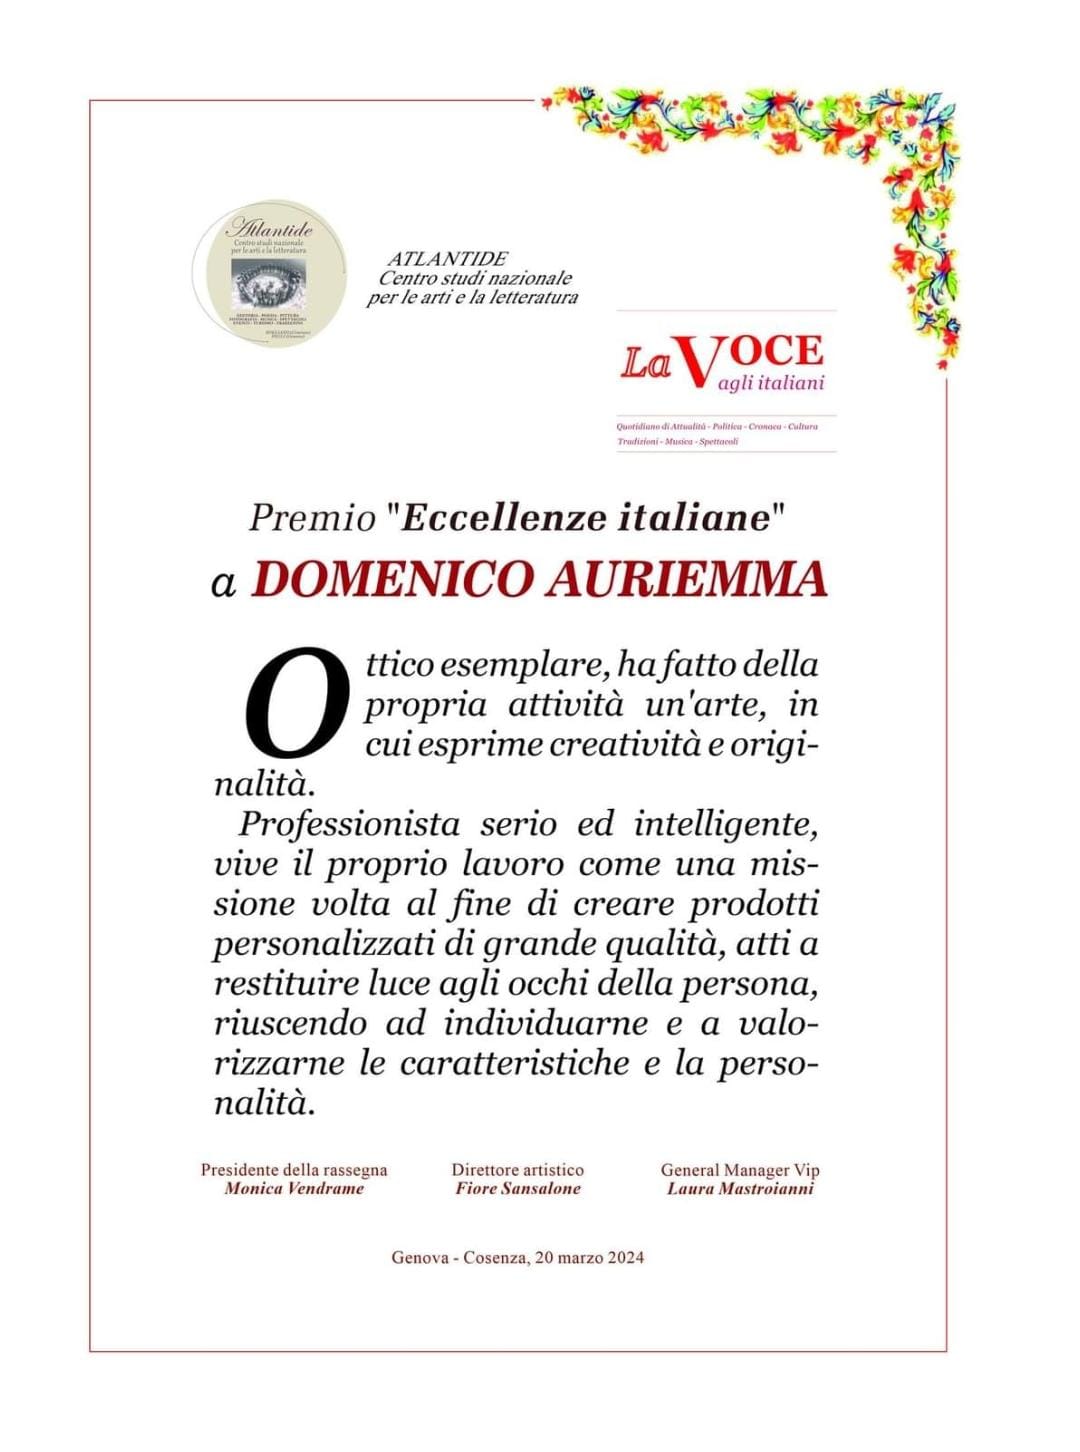 Domenico Auriemma premiato come “Eccellenza italiana”.